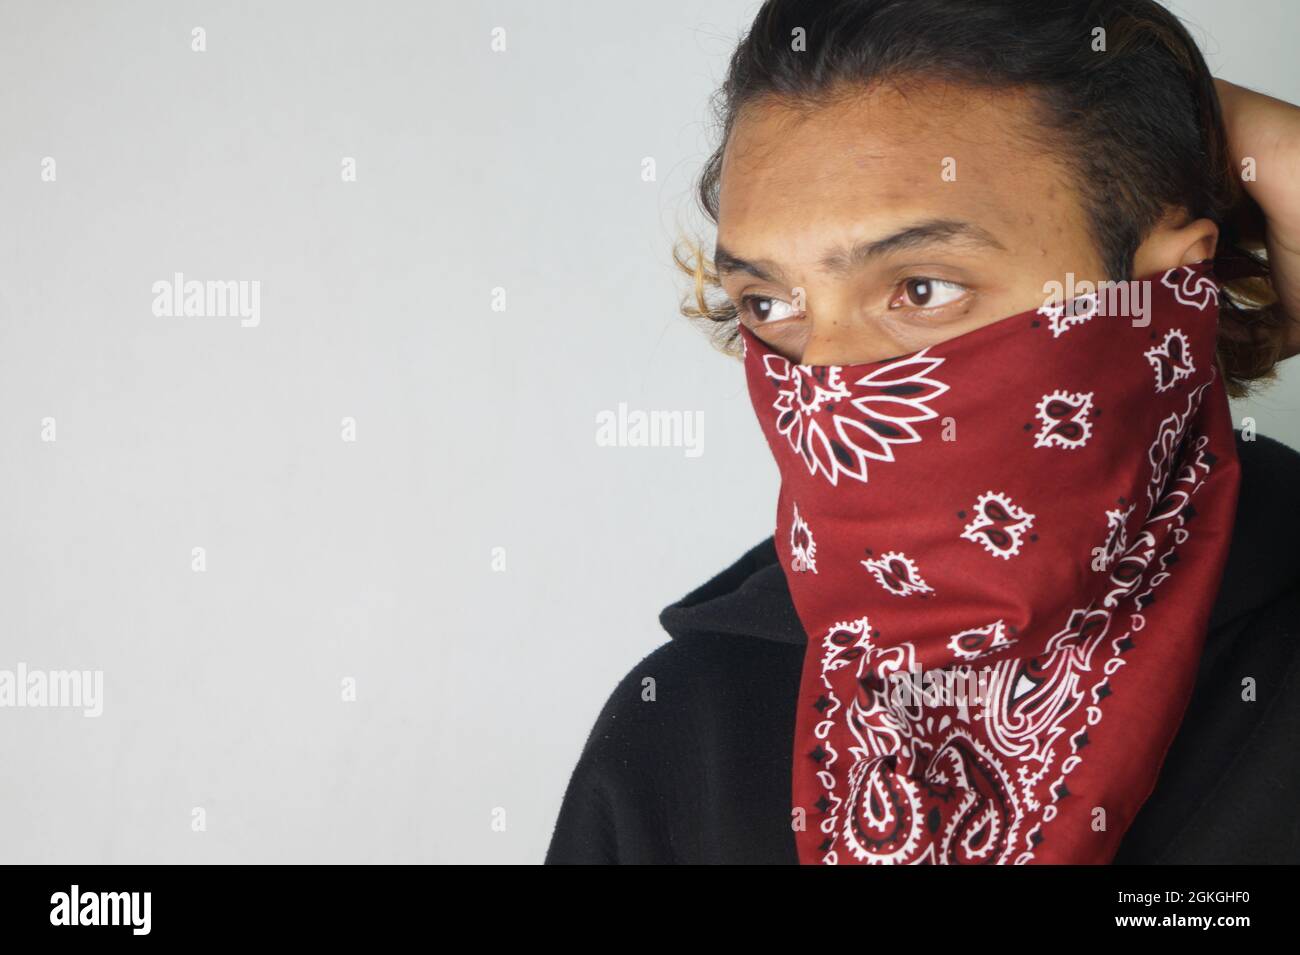 Junger Schläger, indischer Mann mit einem Bandana, das sein Gesicht bedeckt  Stockfotografie - Alamy